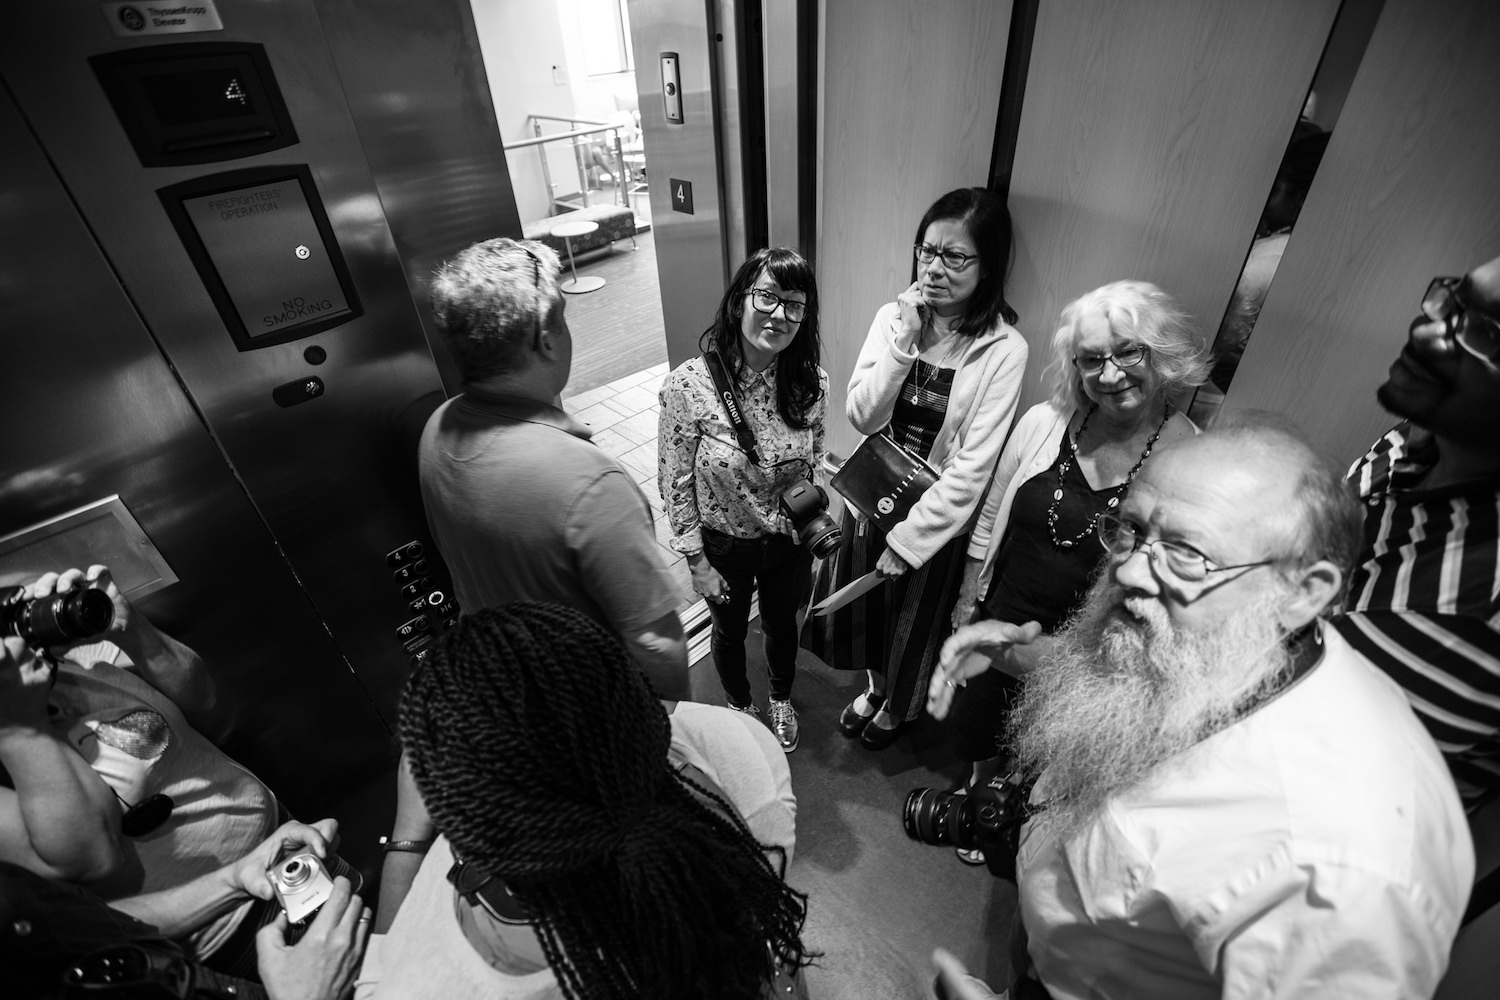 A crowded elevator